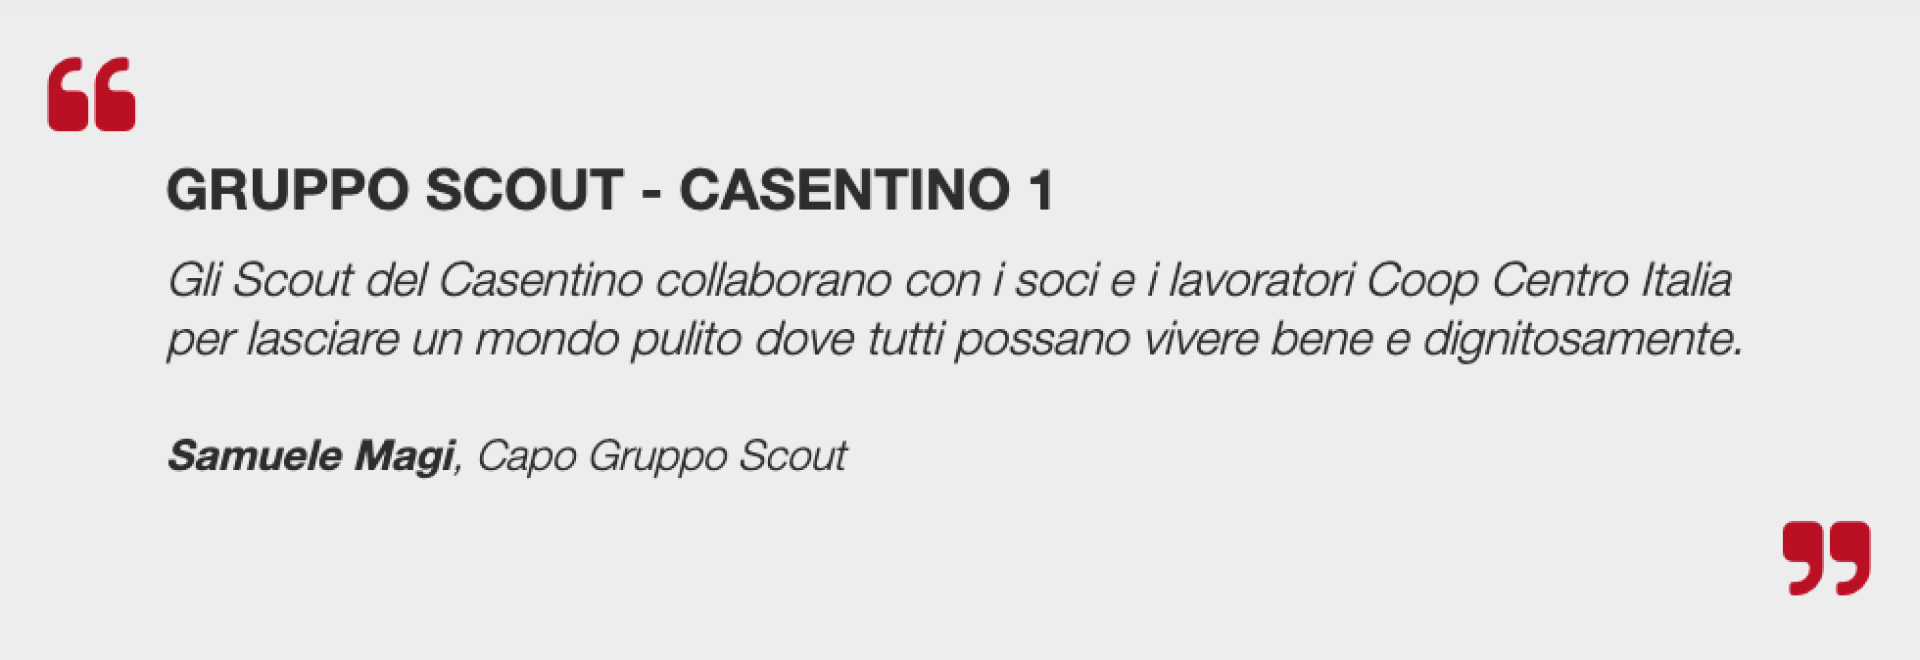 Gruppo Scout - Casentino 1    Gli Scout del Casentino collaborano con i soci e i lavoratori Coop Centro Italia per lasciare un mondo pulito dove tutti possano vivere bene e dignitosamente.    Samuele Magi, Capo Gruppo Scout    